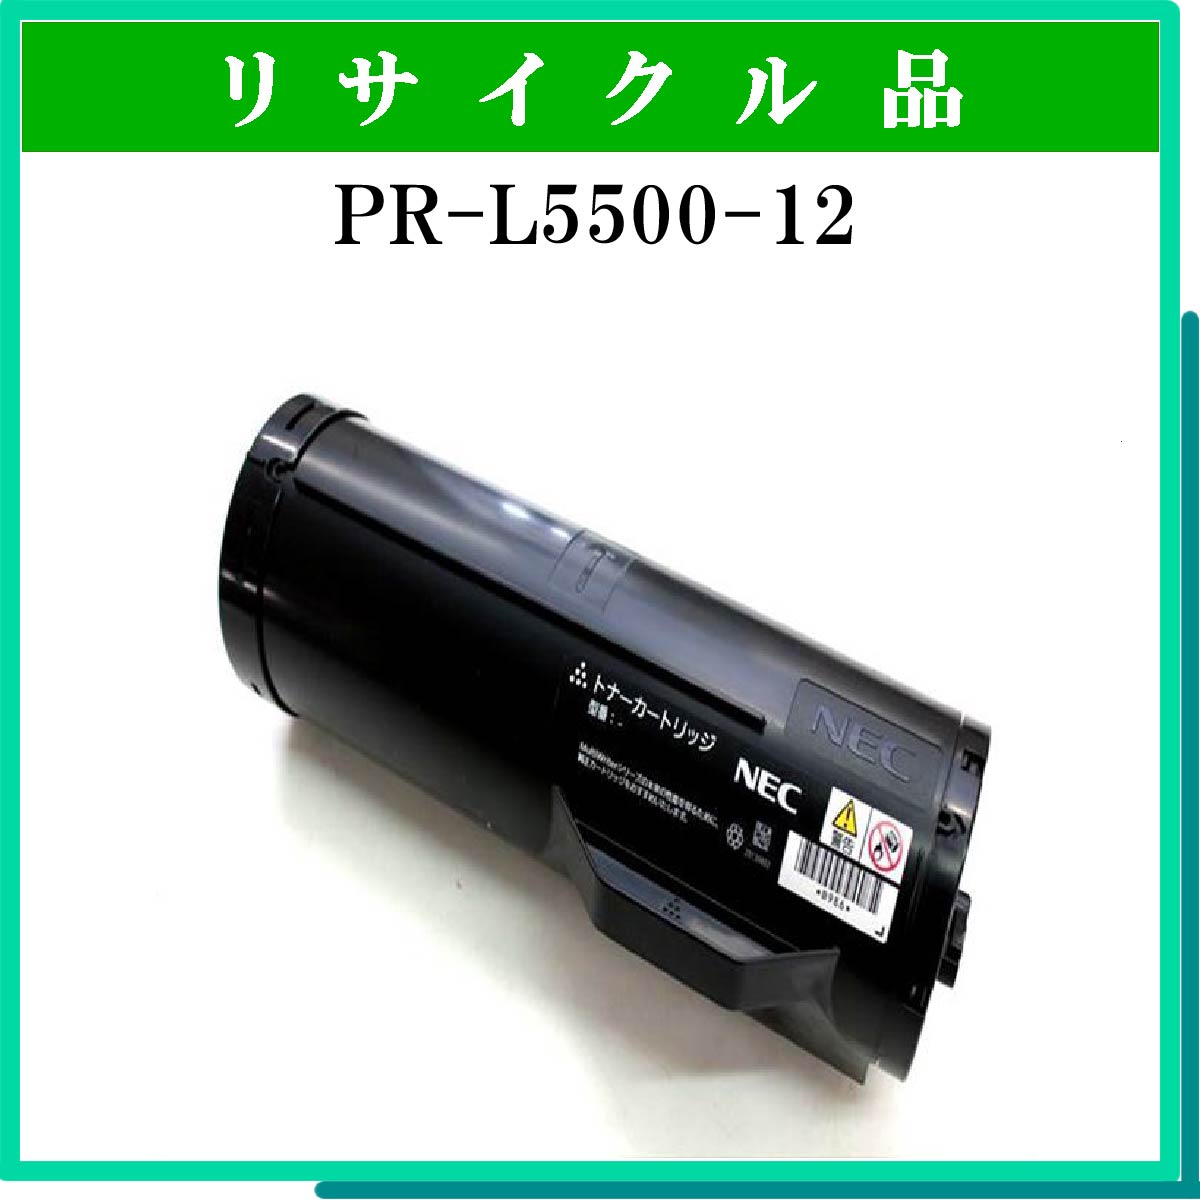 PR-L5500-12